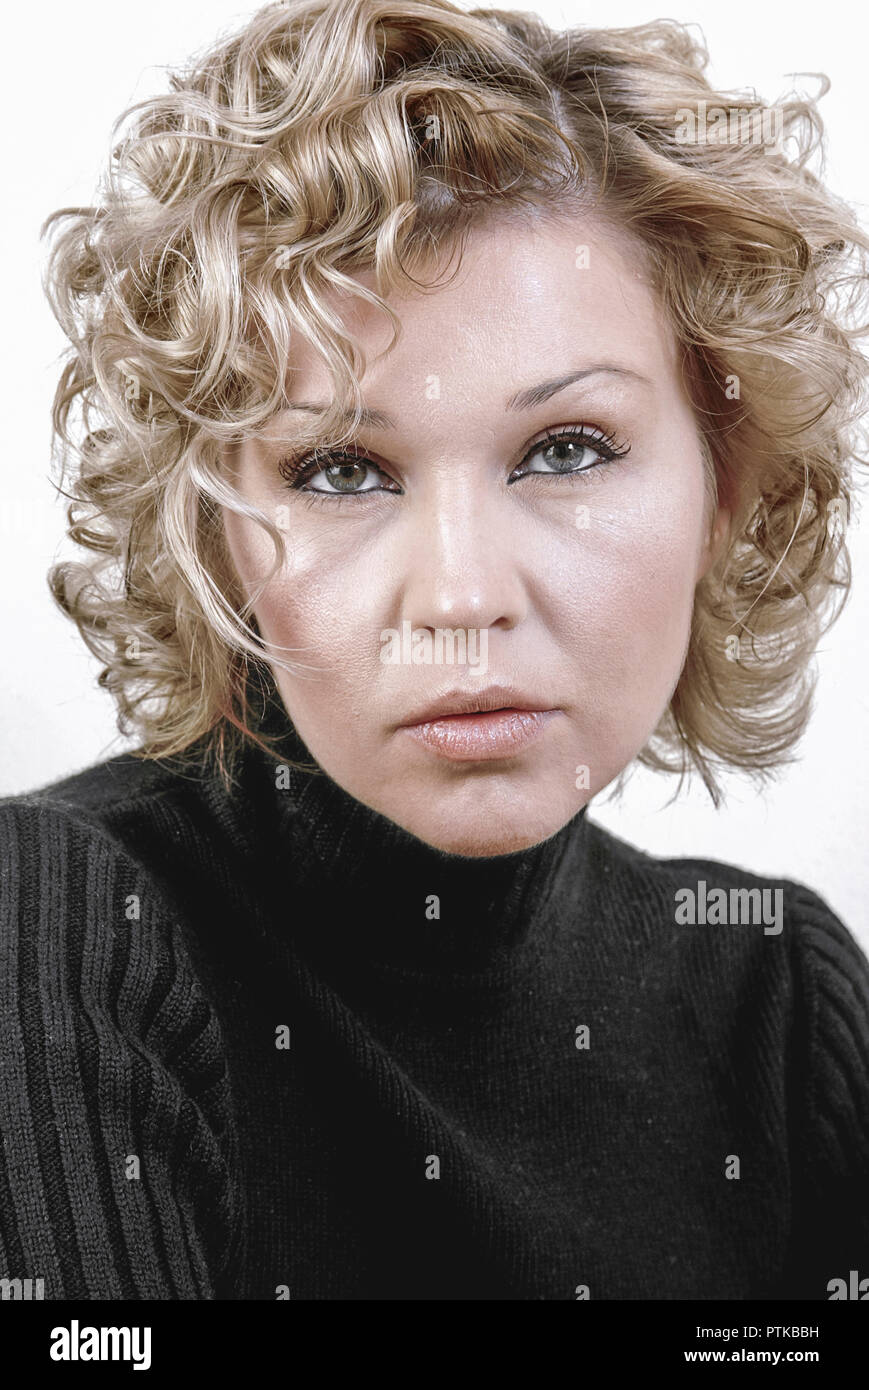 Frau, 28 Jahre, blonde Locken, schwarzer Pullover, Beauty, Portrait  (Modellfreigabe Stock Photo - Alamy